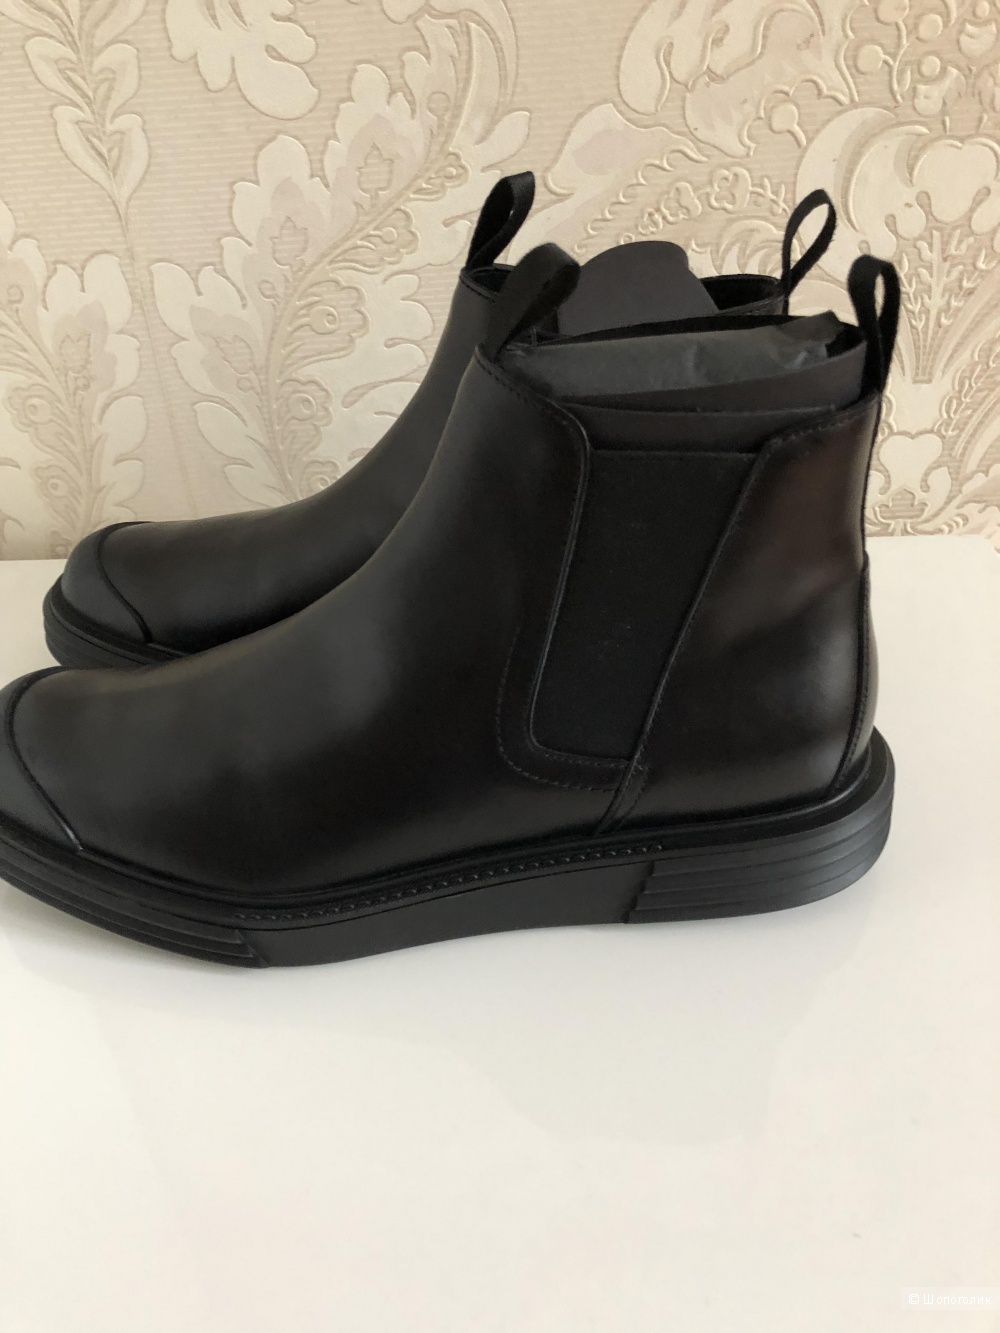 Ботинки Prada размер 8 чёрные